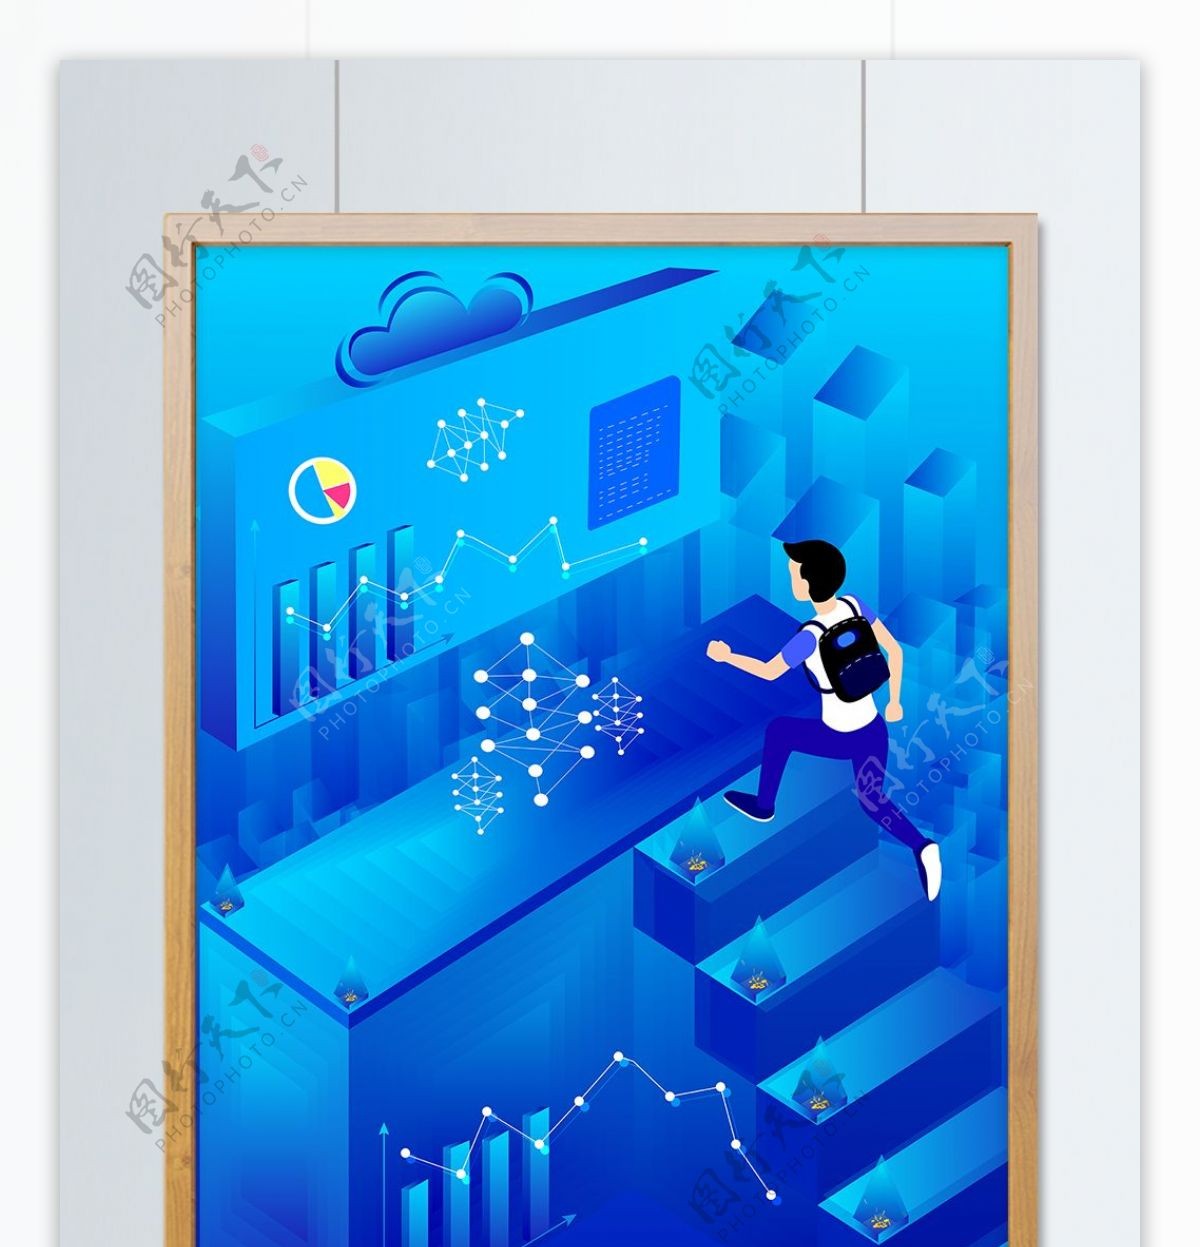 2.5D蓝色科技人物建筑图表商业插画